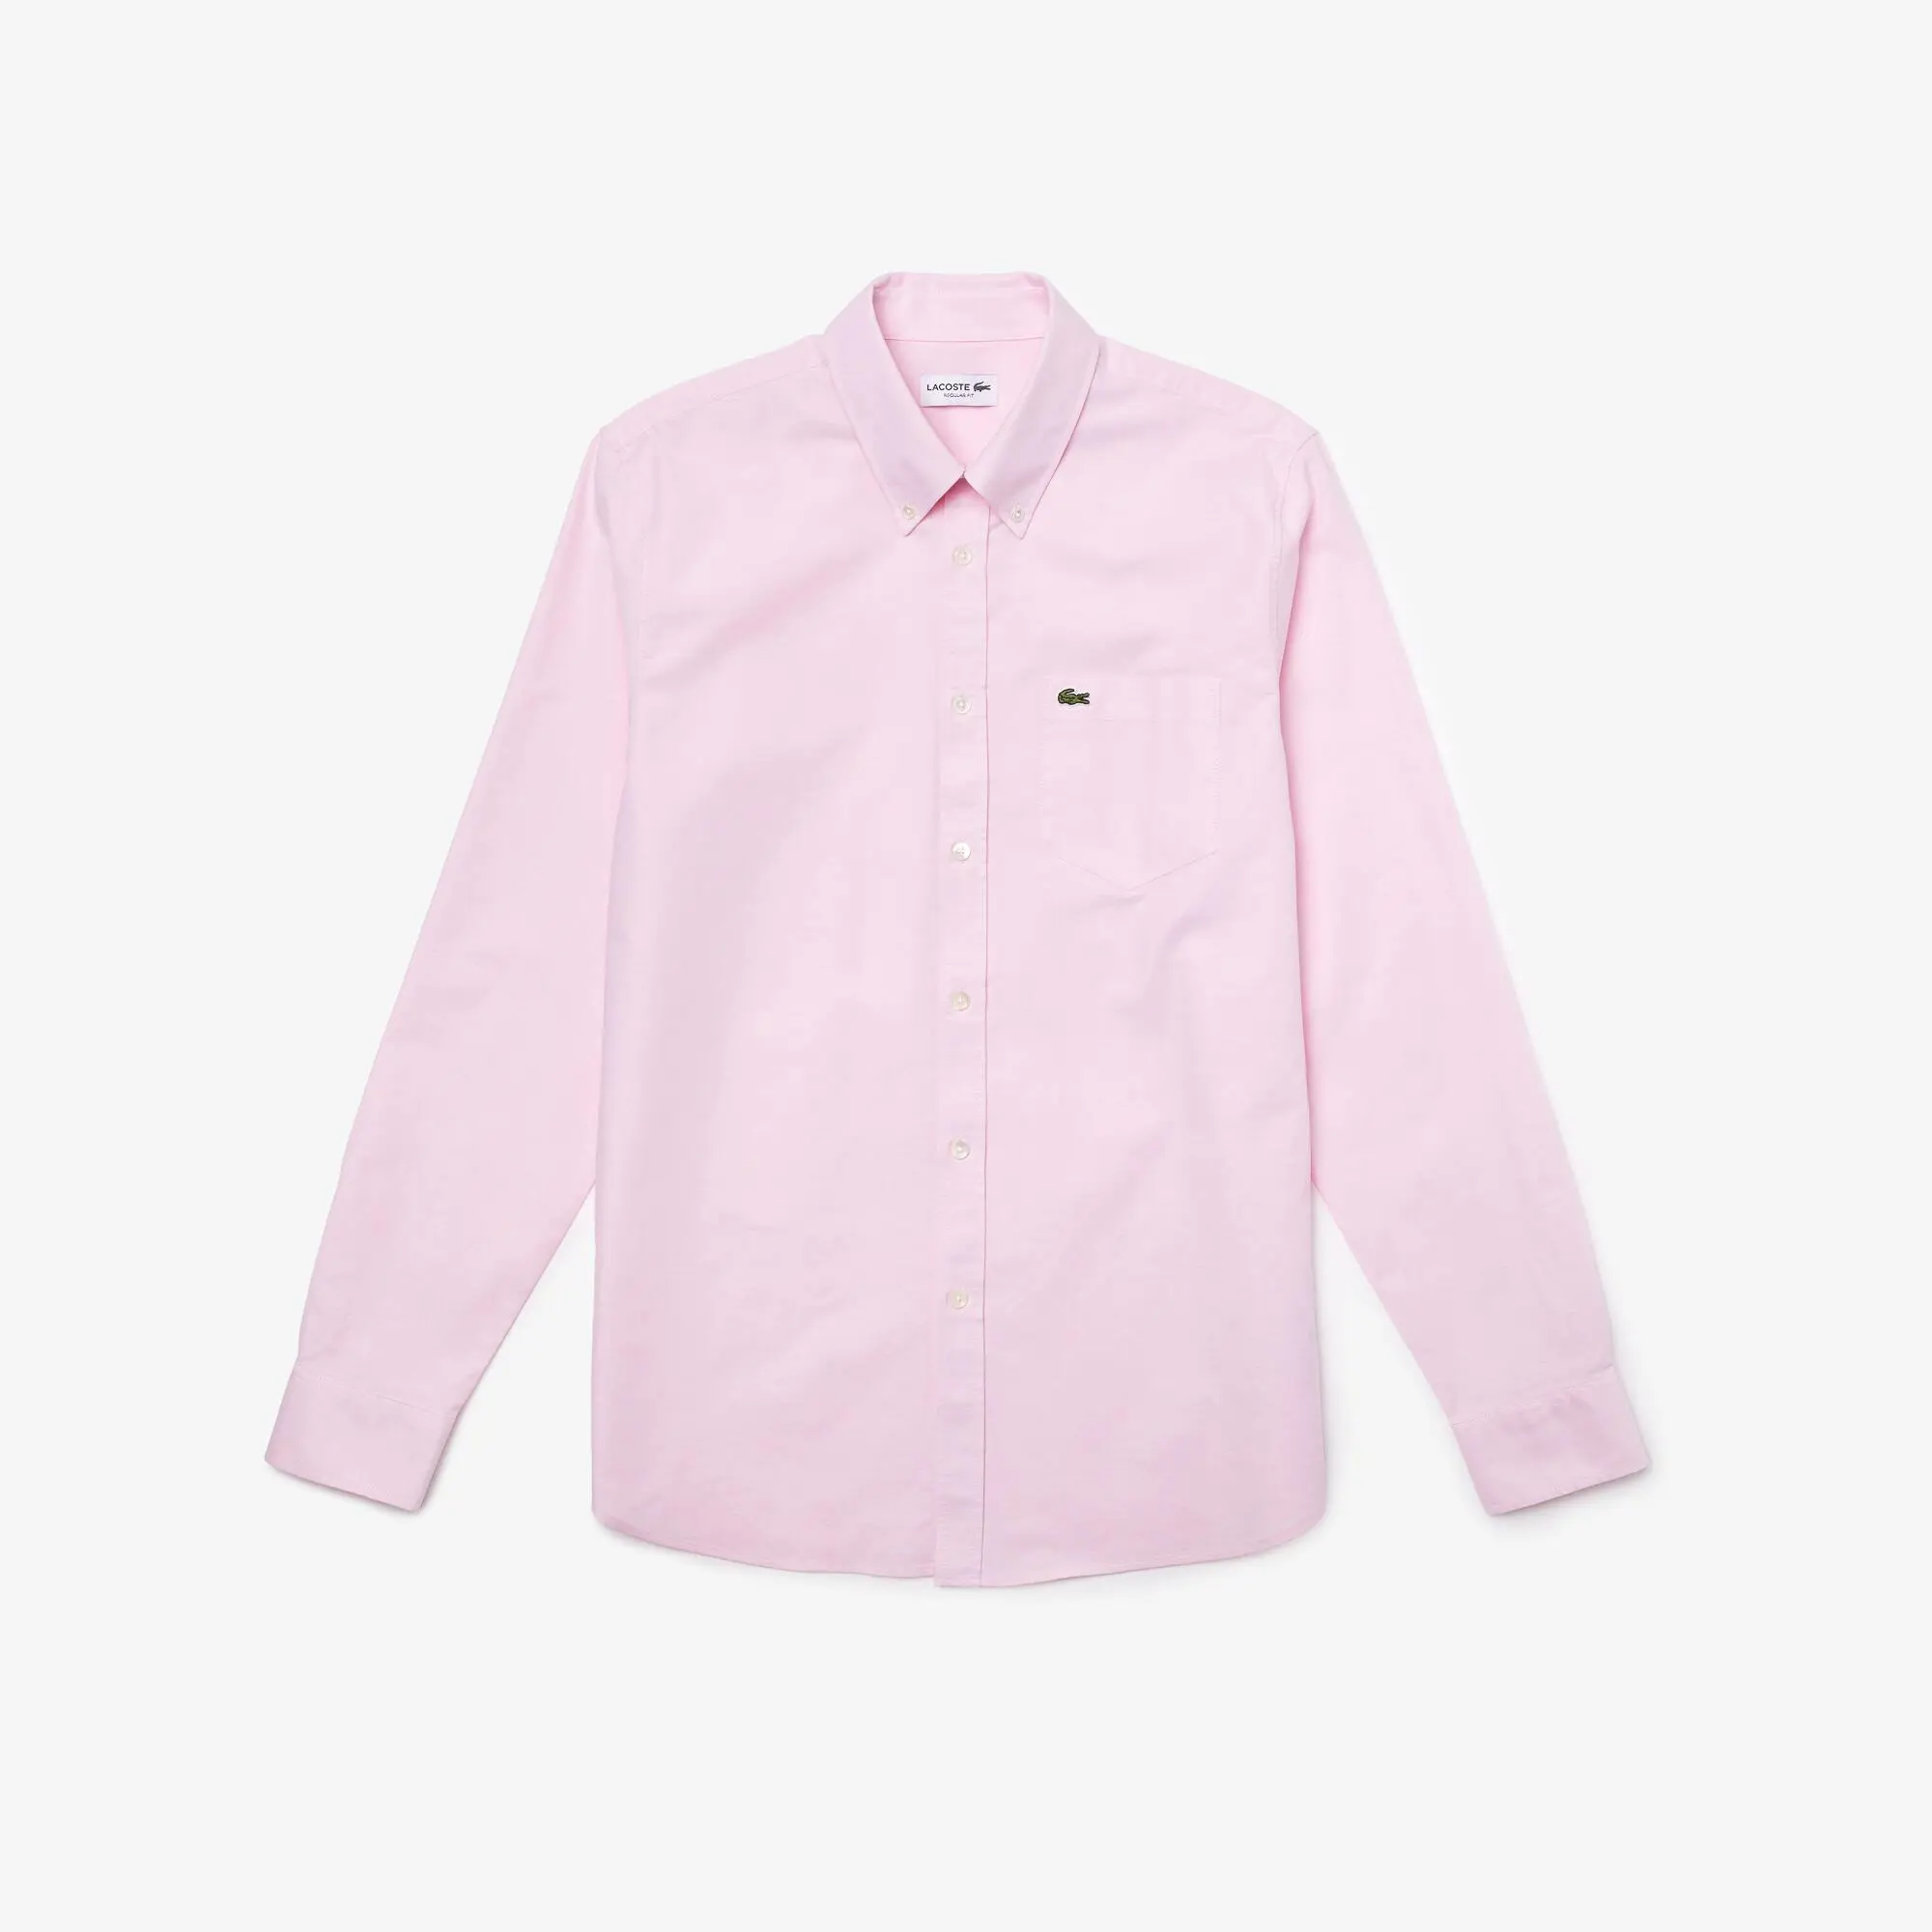 Lacoste Camisa de algodão Oxford regular fit para homem. 2